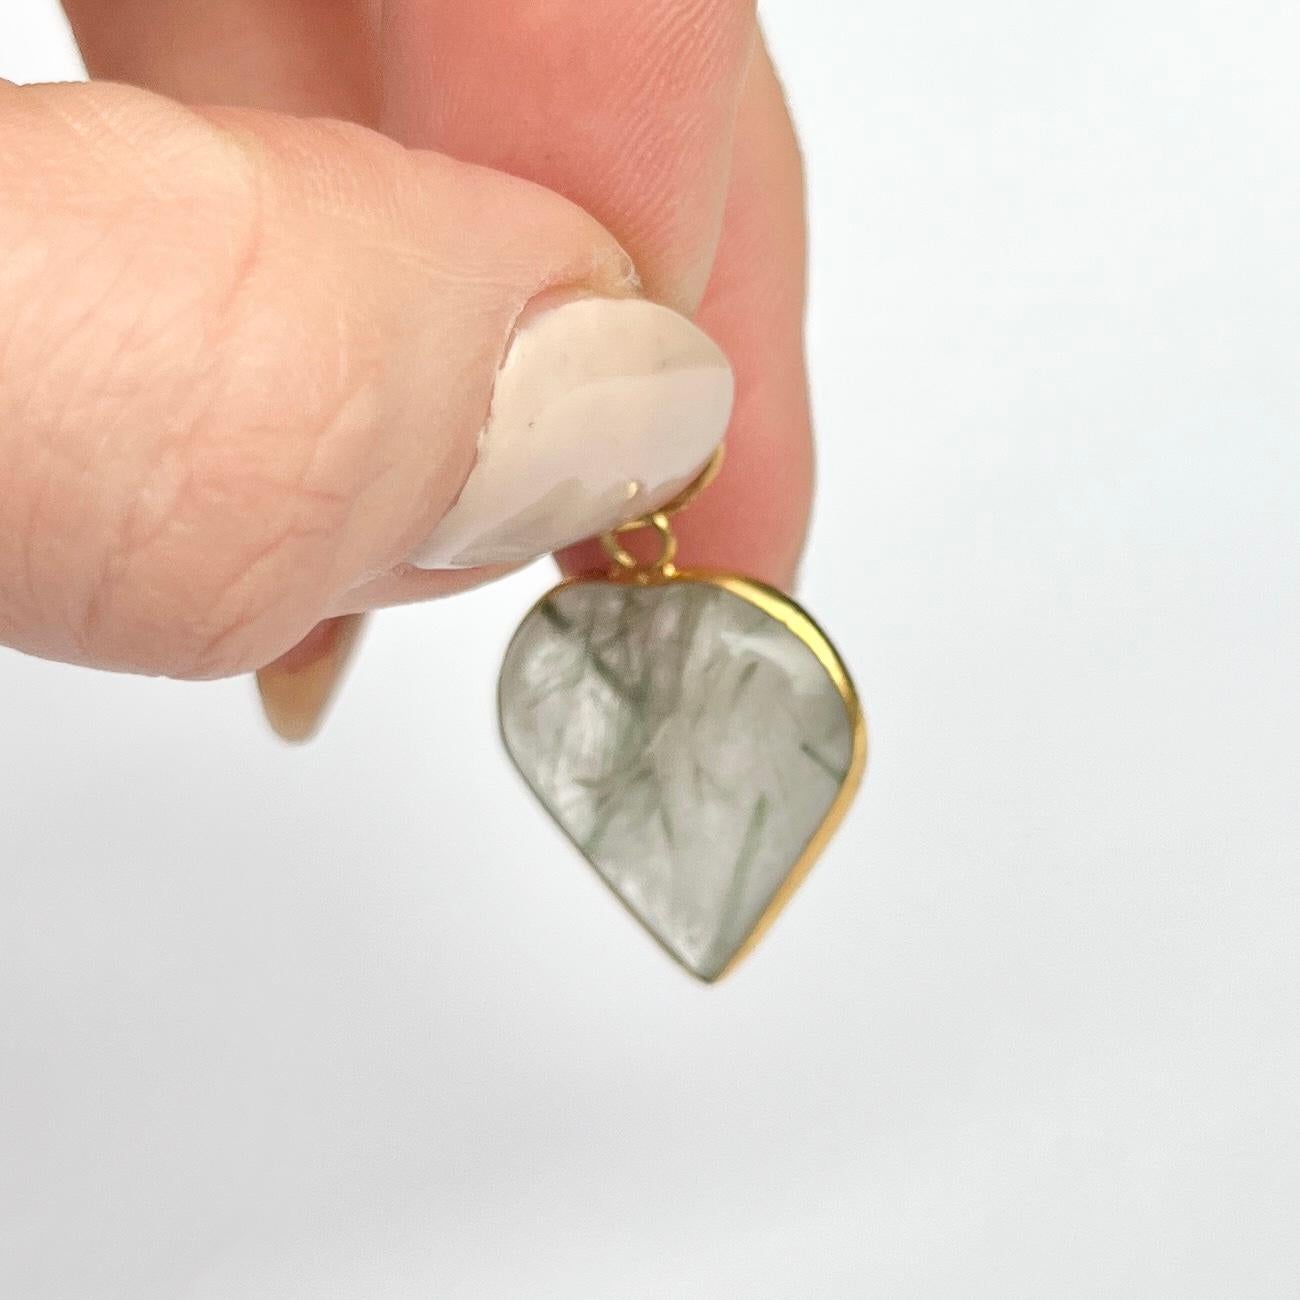 Magnifique et simple pendentif en agate. La pierre, en forme de cœur, est entourée d'une délicate bande d'or 9ct. 

Hauteur avec boucle : 26mm

Poids : 3,1 g
